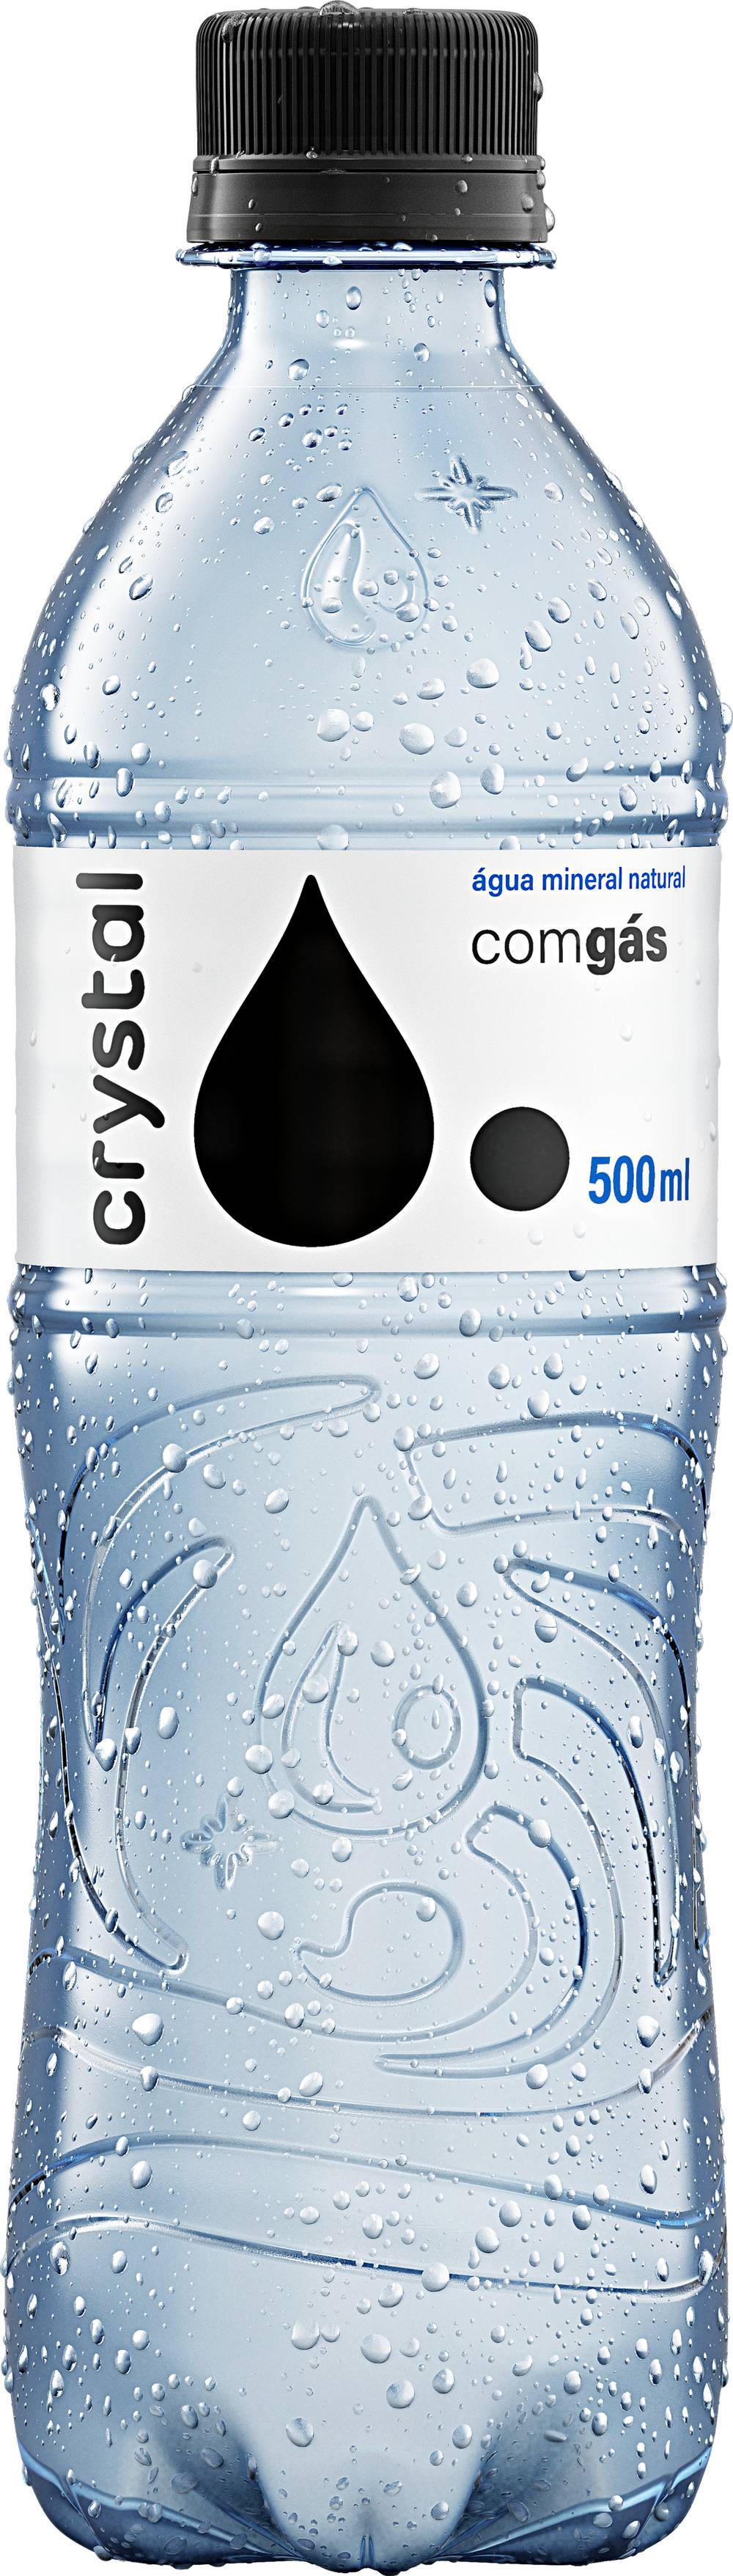 Crystal água mineral natural com gás (500 ml)